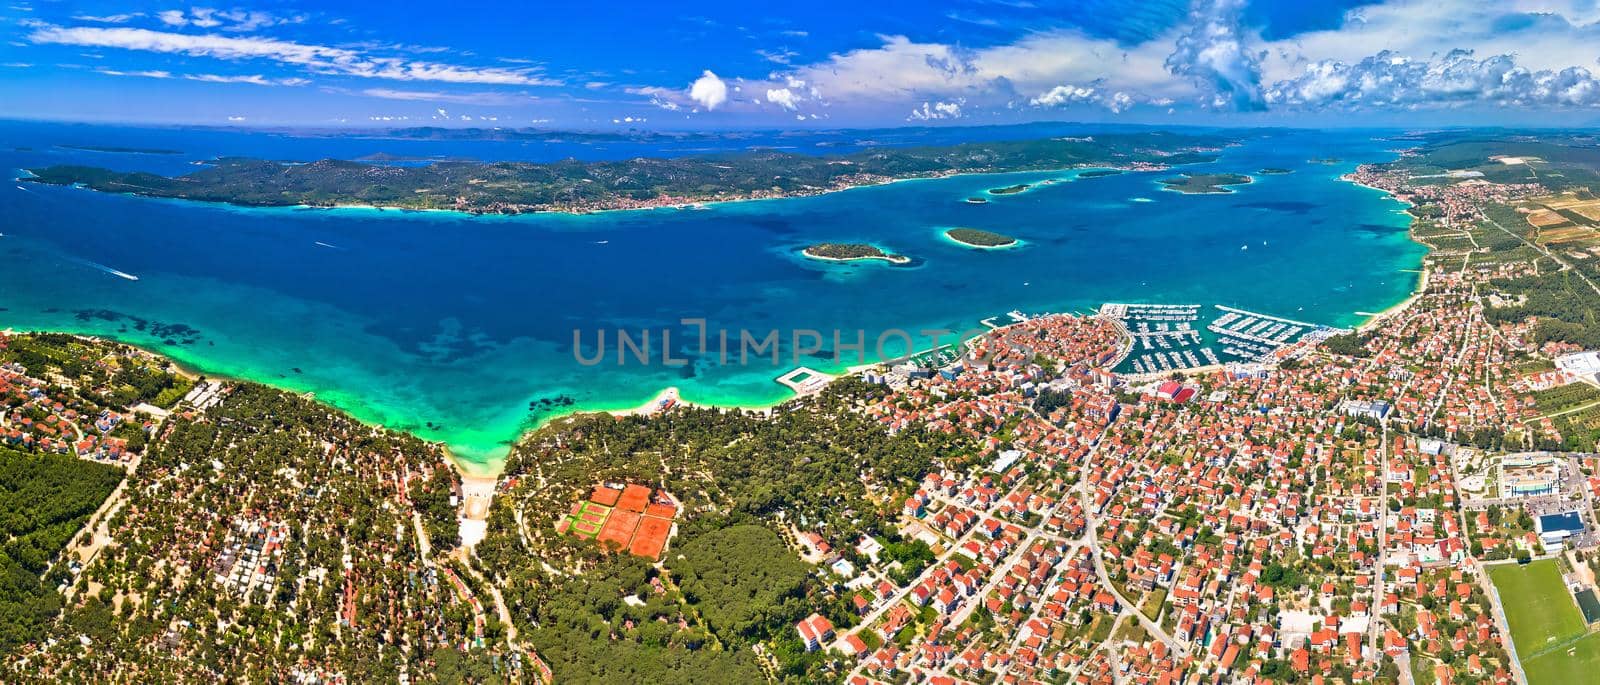 Biograd na Moru archipelago panoramic aerial view, coastline landscape of Croatia